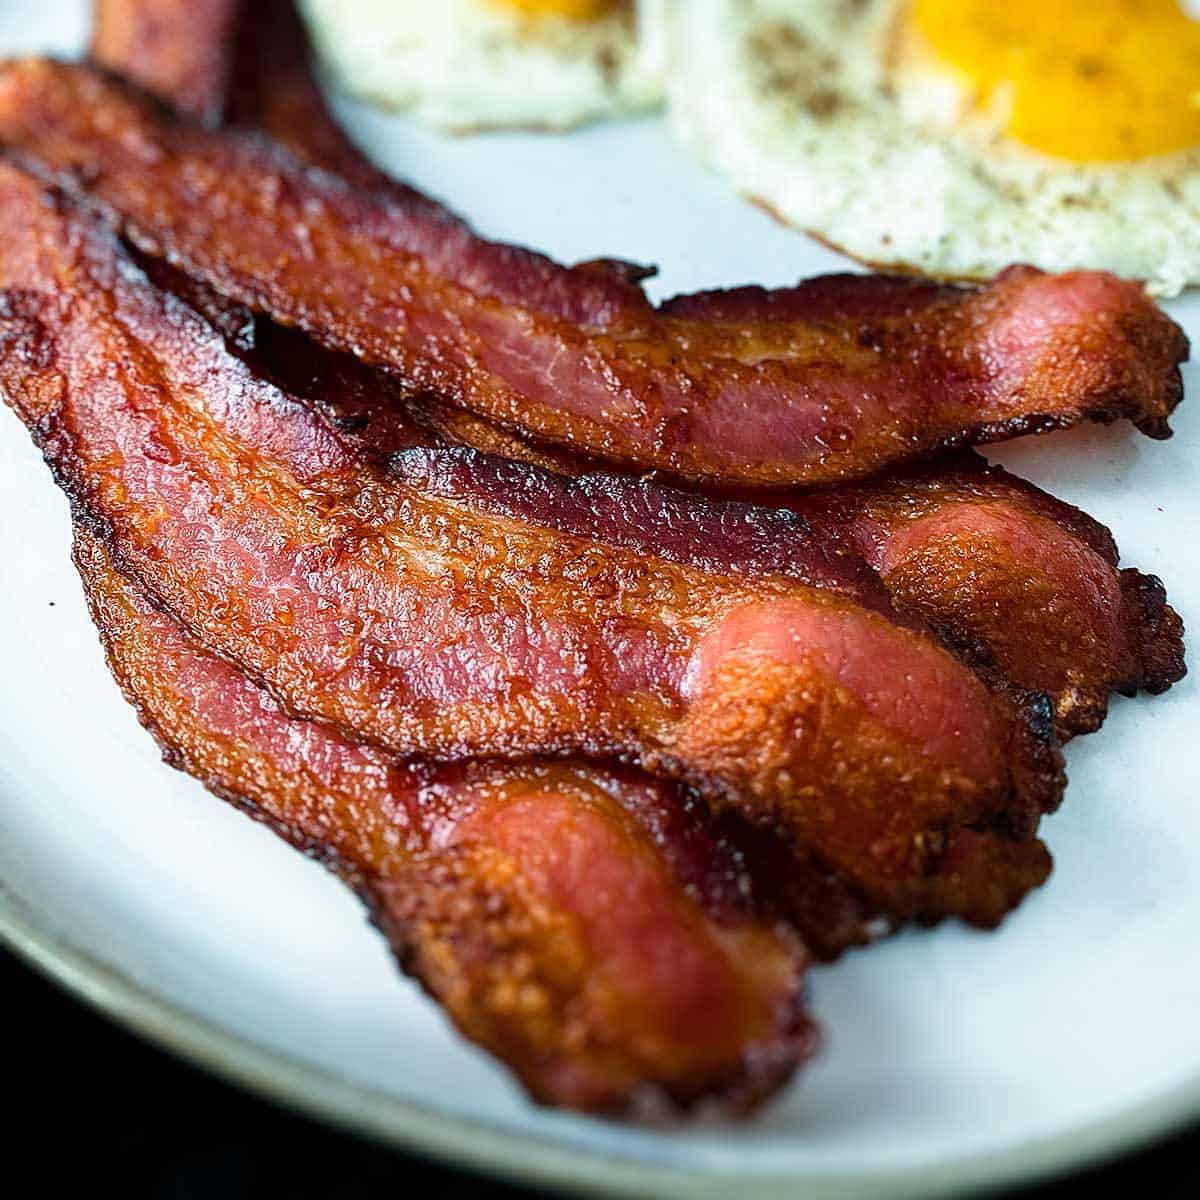 https://sundaysuppermovement.com/wp-content/uploads/2021/08/air-fryer-bacon-featured.jpg